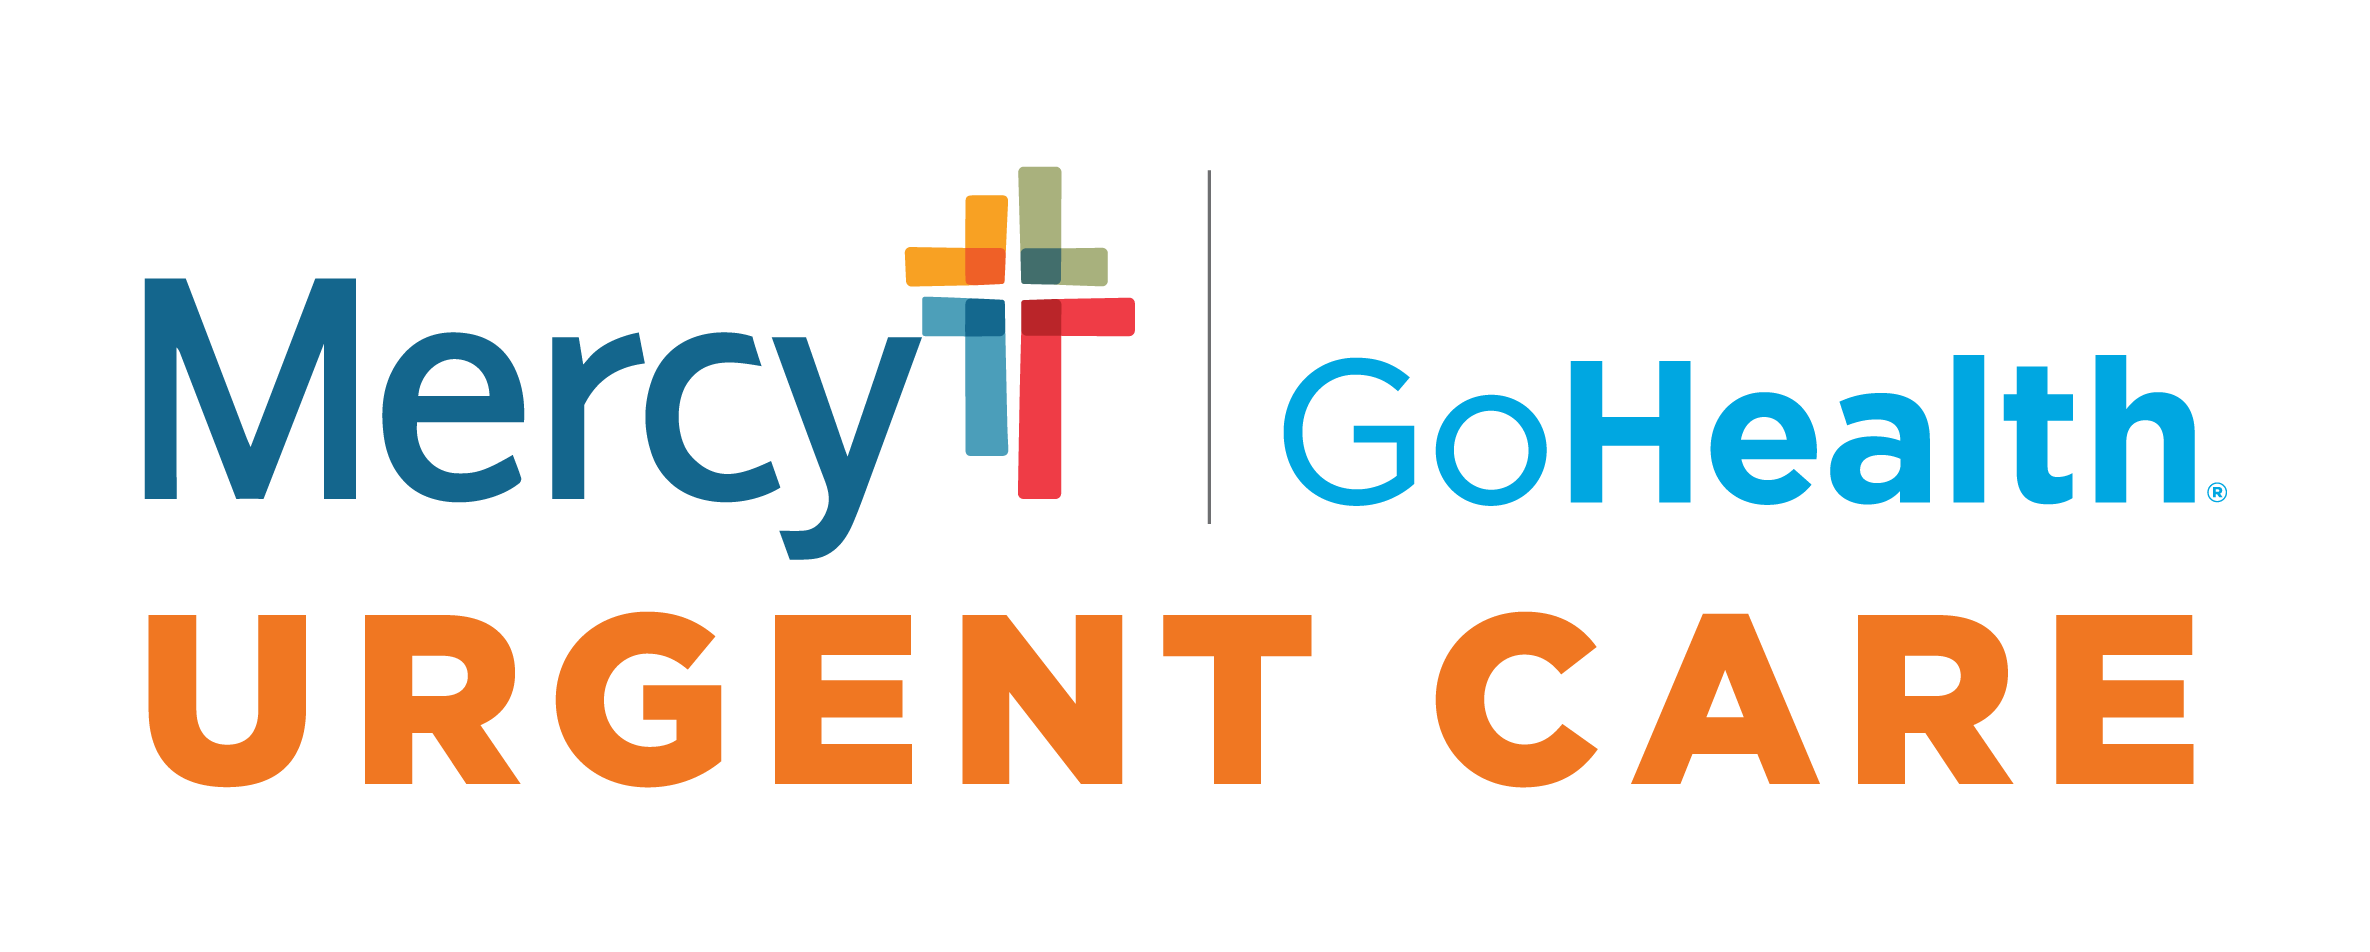 Mercy- GoHealth Urgent Care - Northwest Expressway Logo